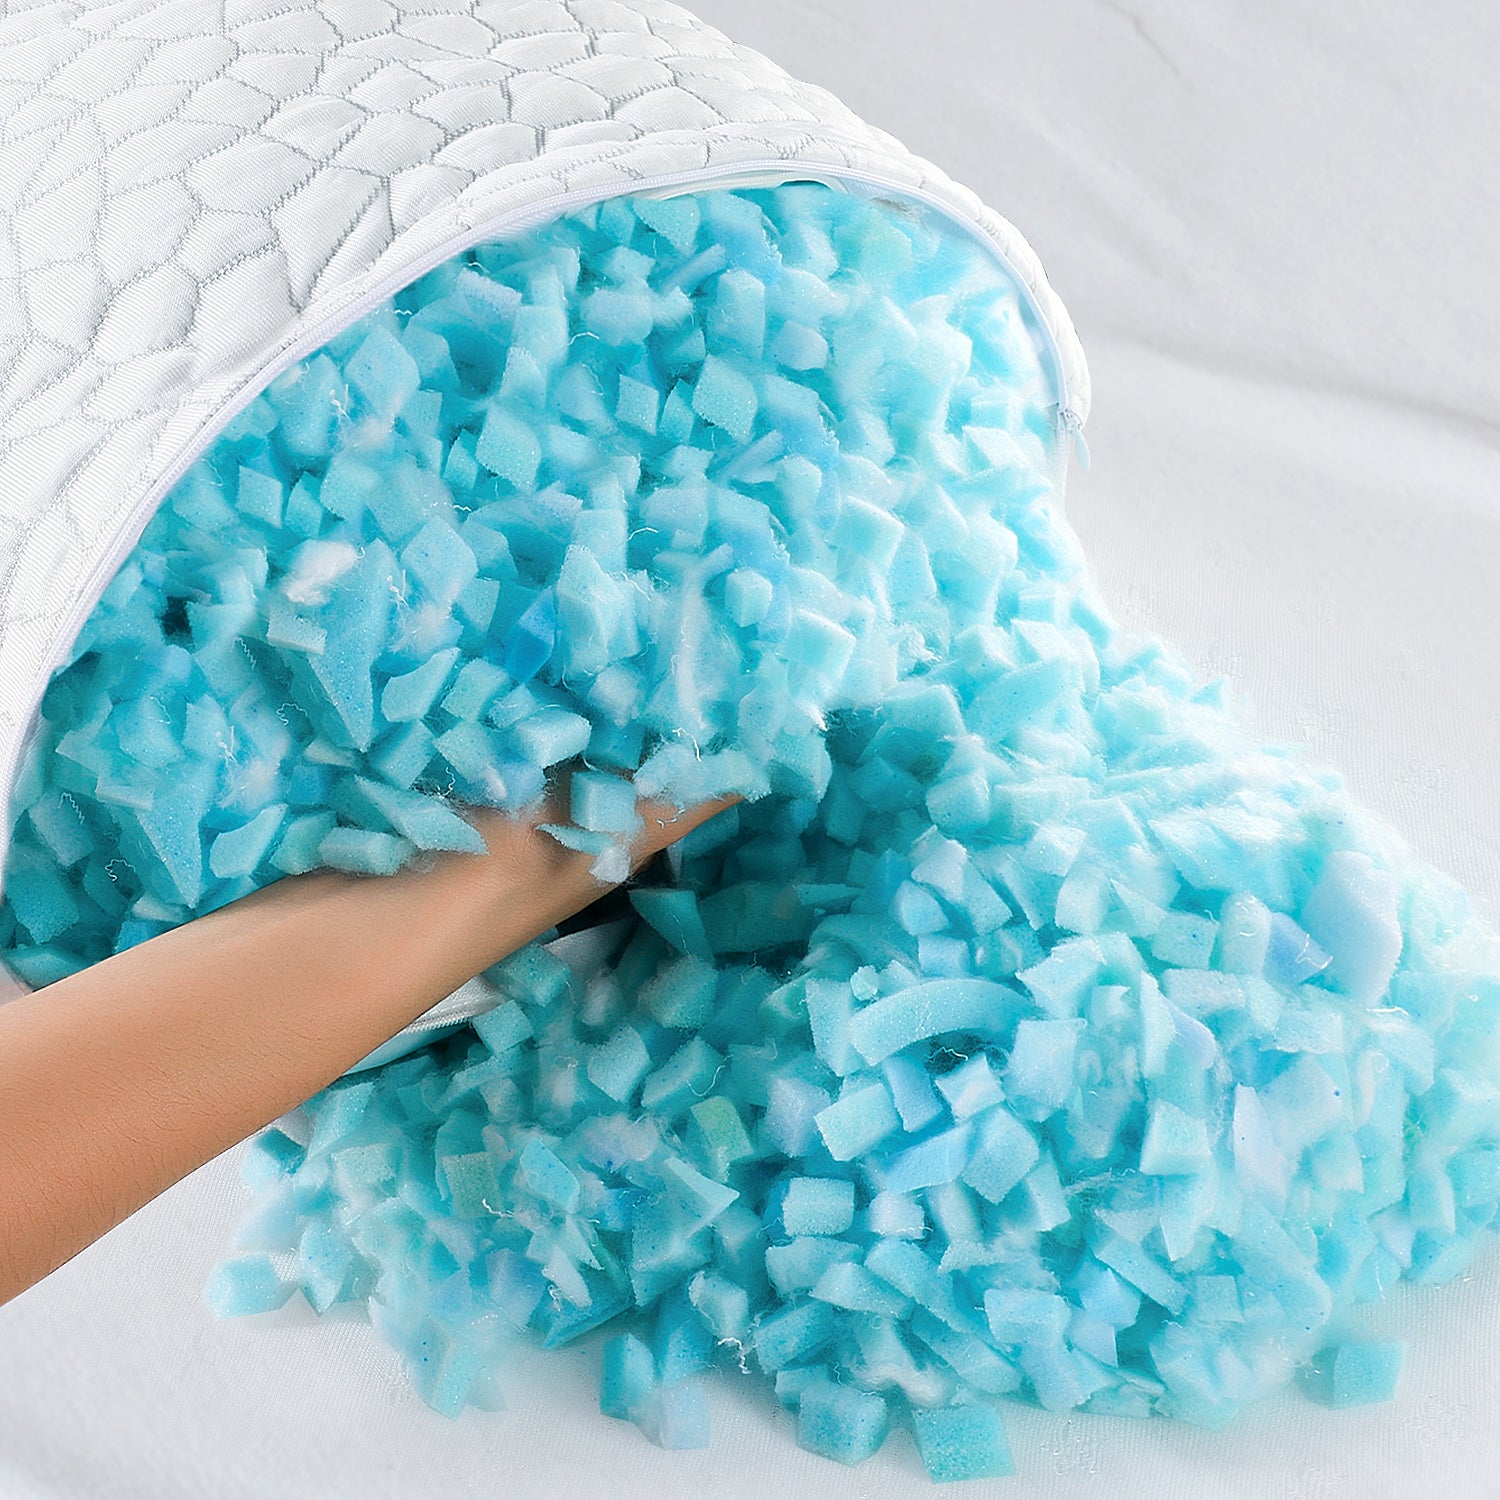 shredded memory foam pillow